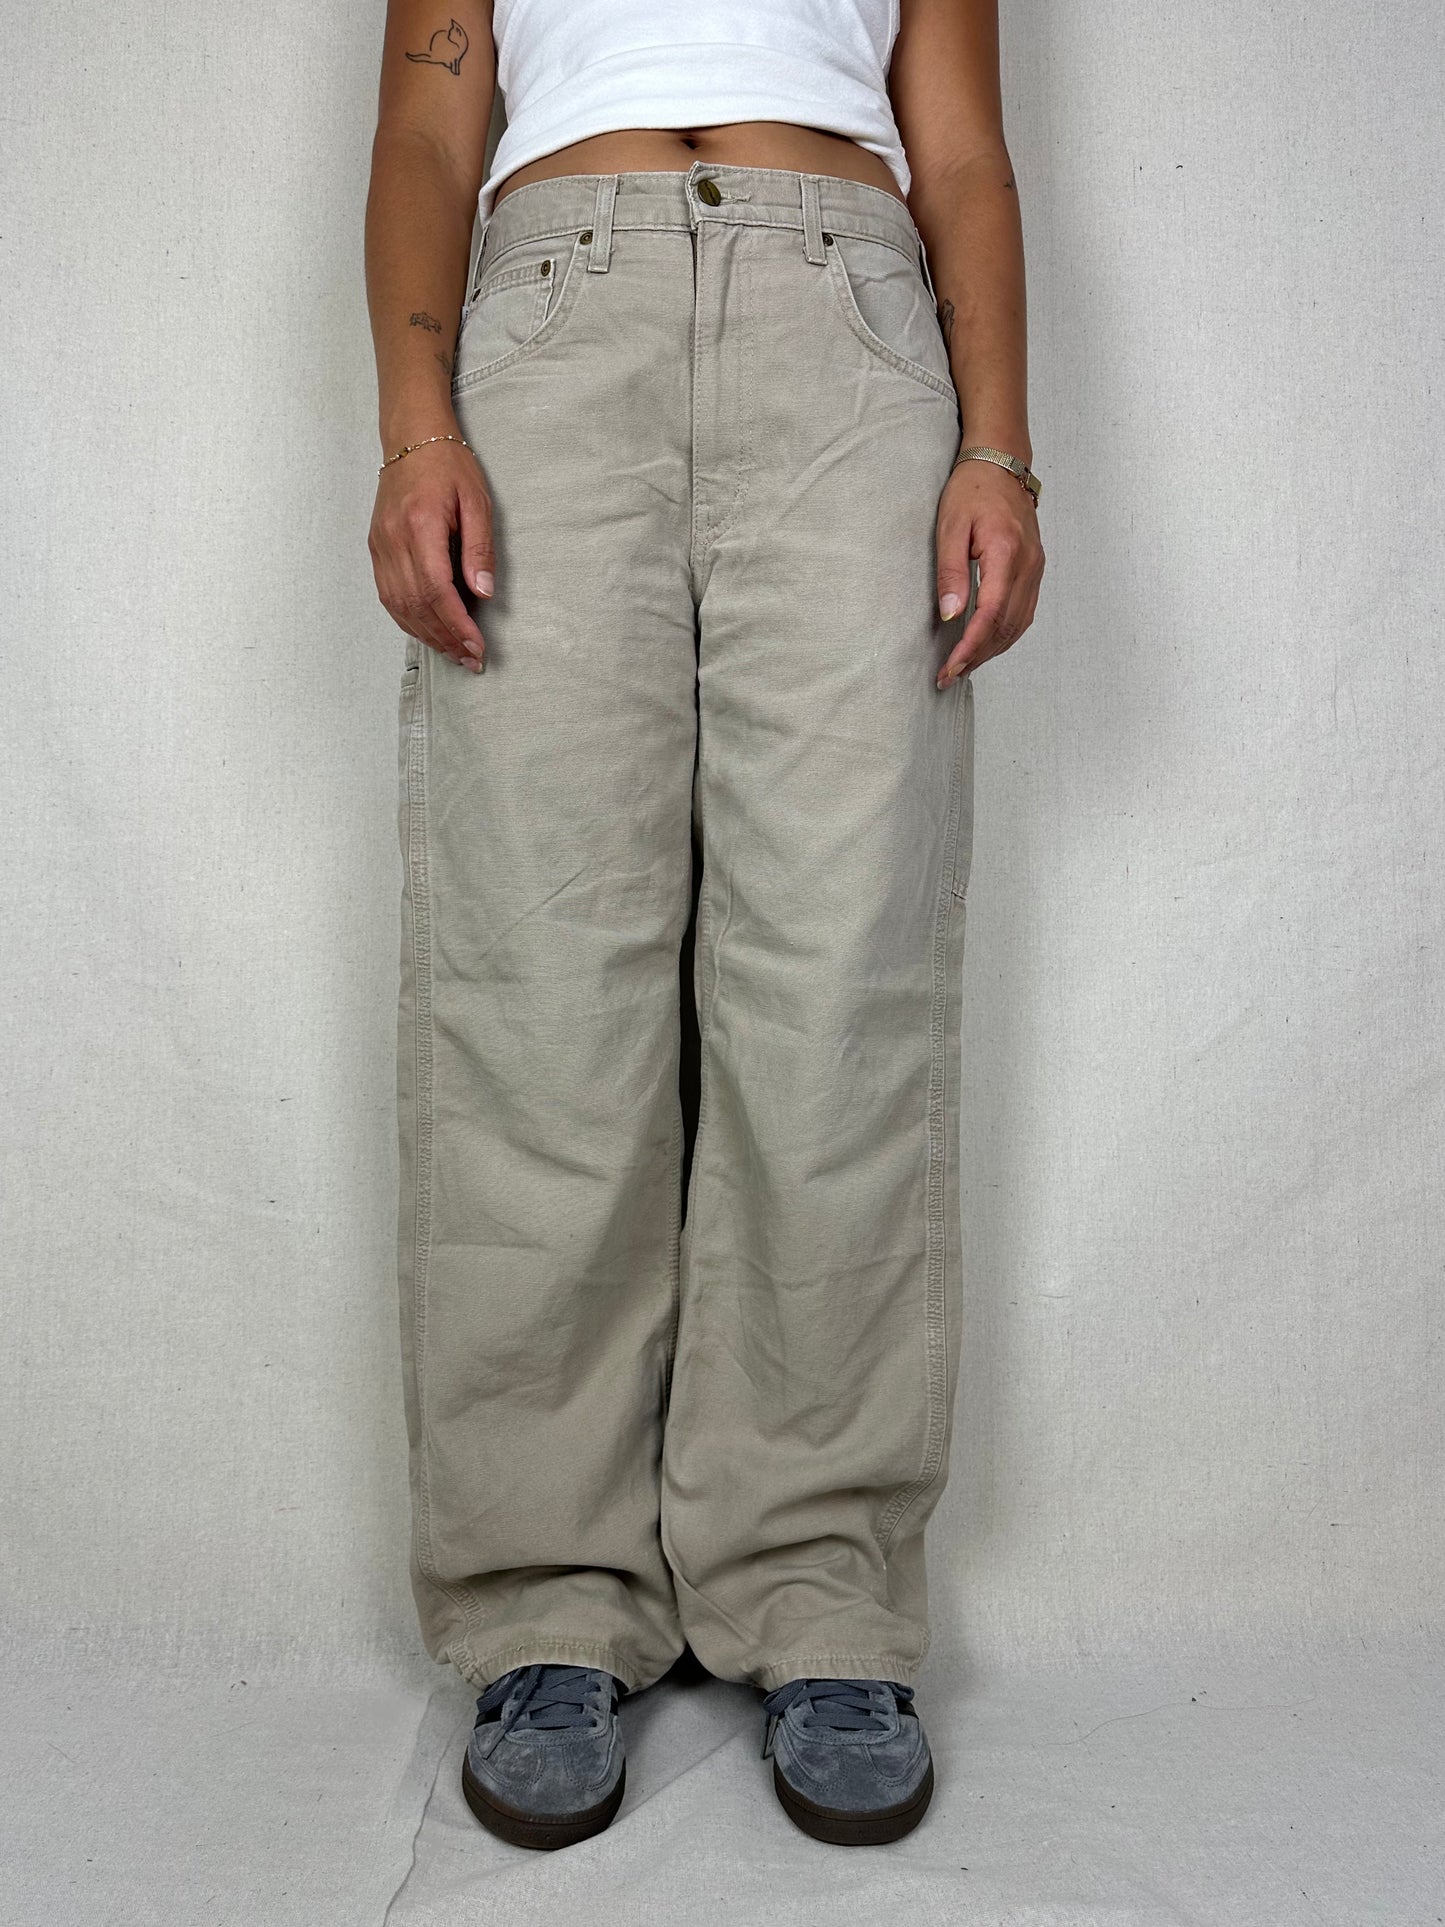 90's Carhartt Vintage Carpenter Pants Size 30x31